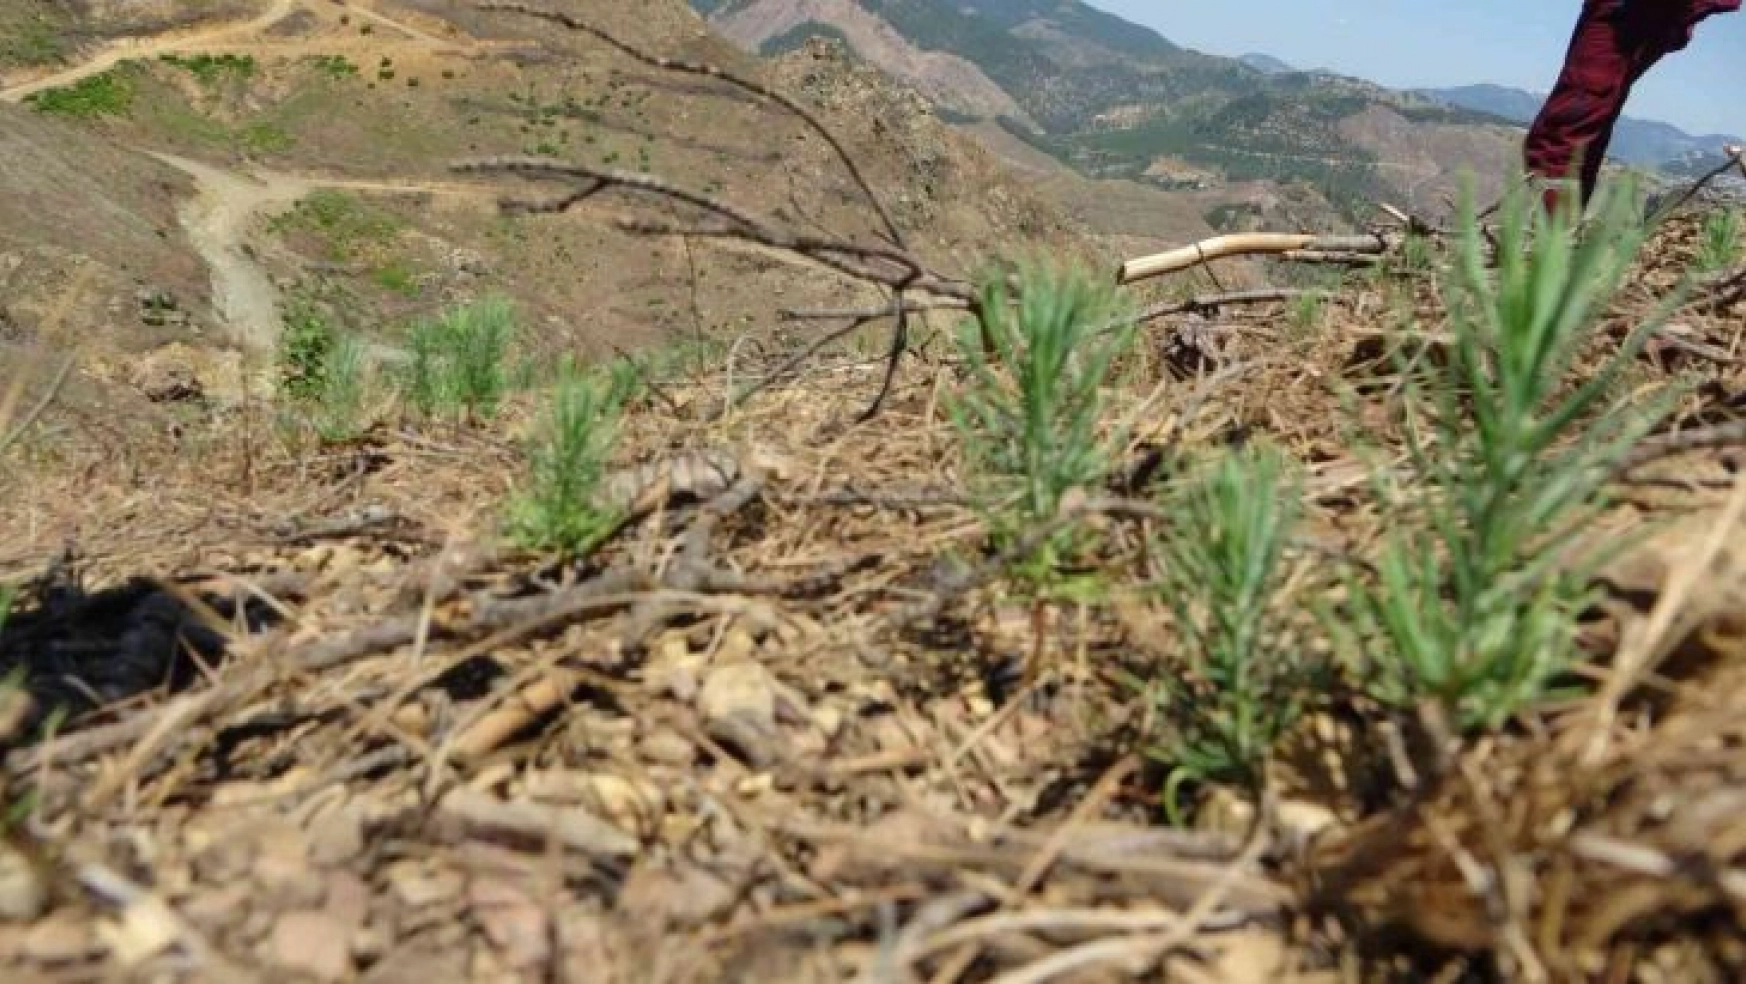 9 ton tohum serpilmişti, Adana'da yanan ormanlık alan yeşeriyor